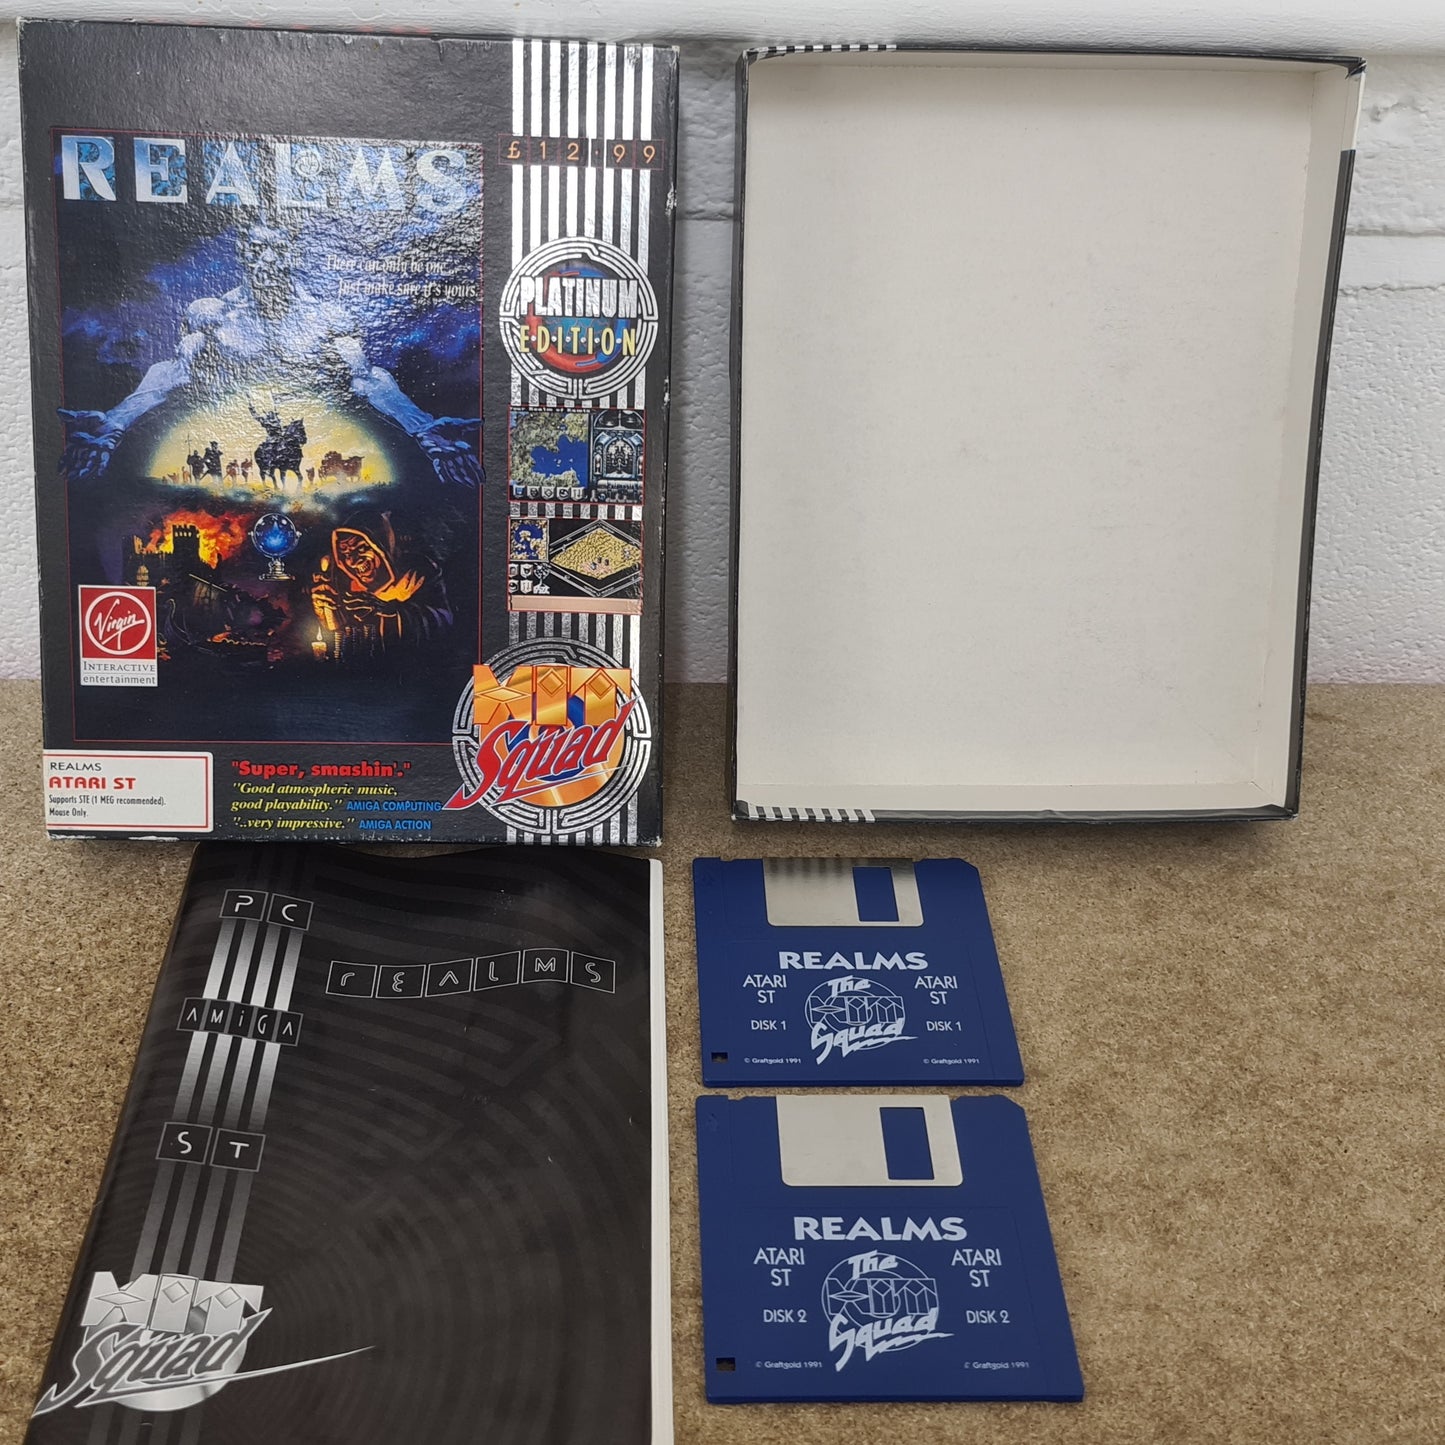 Realms Platinum Edition Atari ST Game